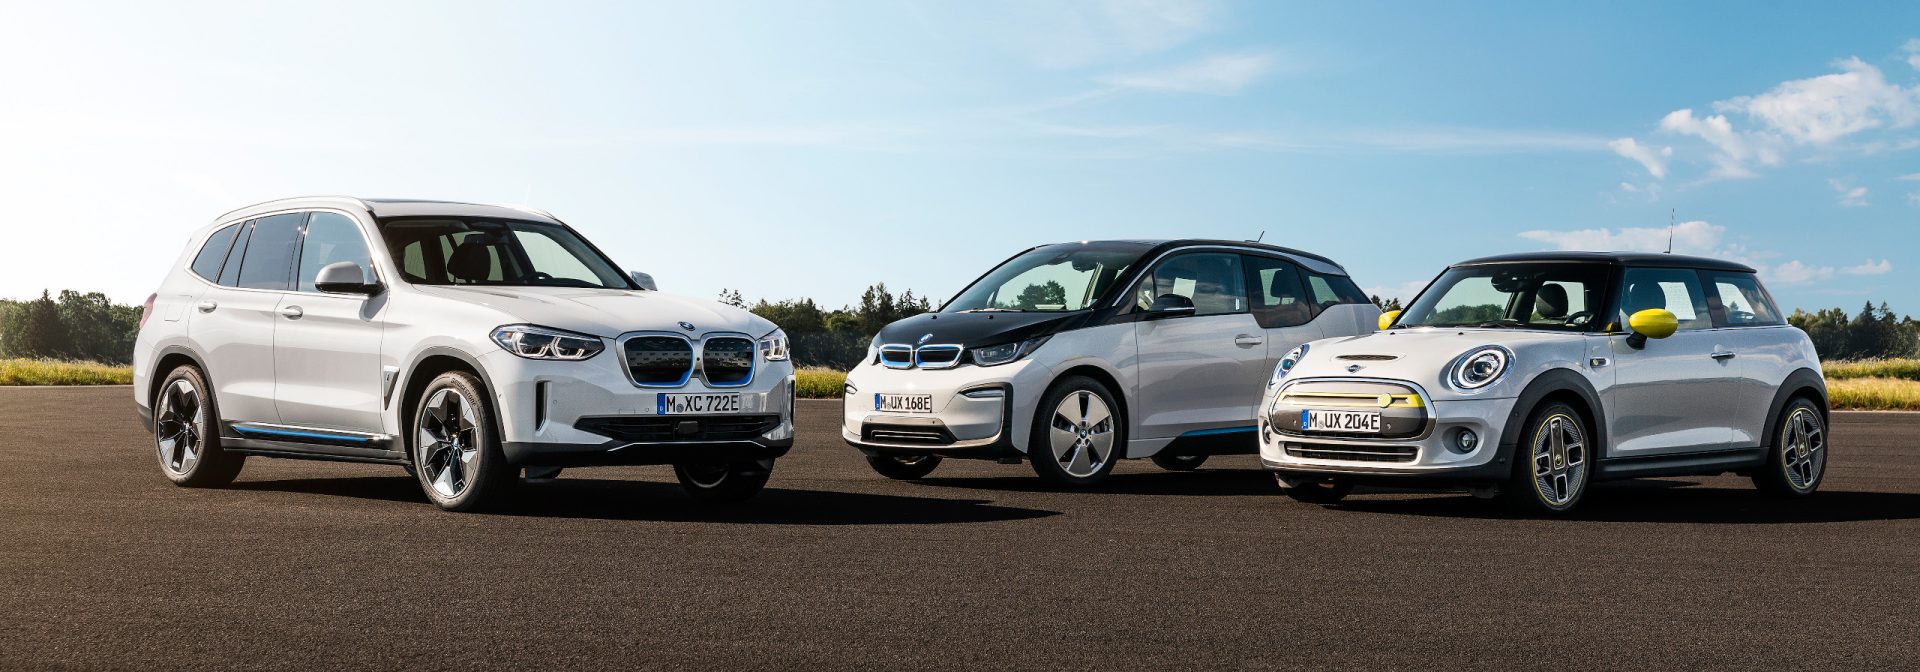 BMW Group dreht Entwicklung eigener CO2-Emissionen nachhaltig um